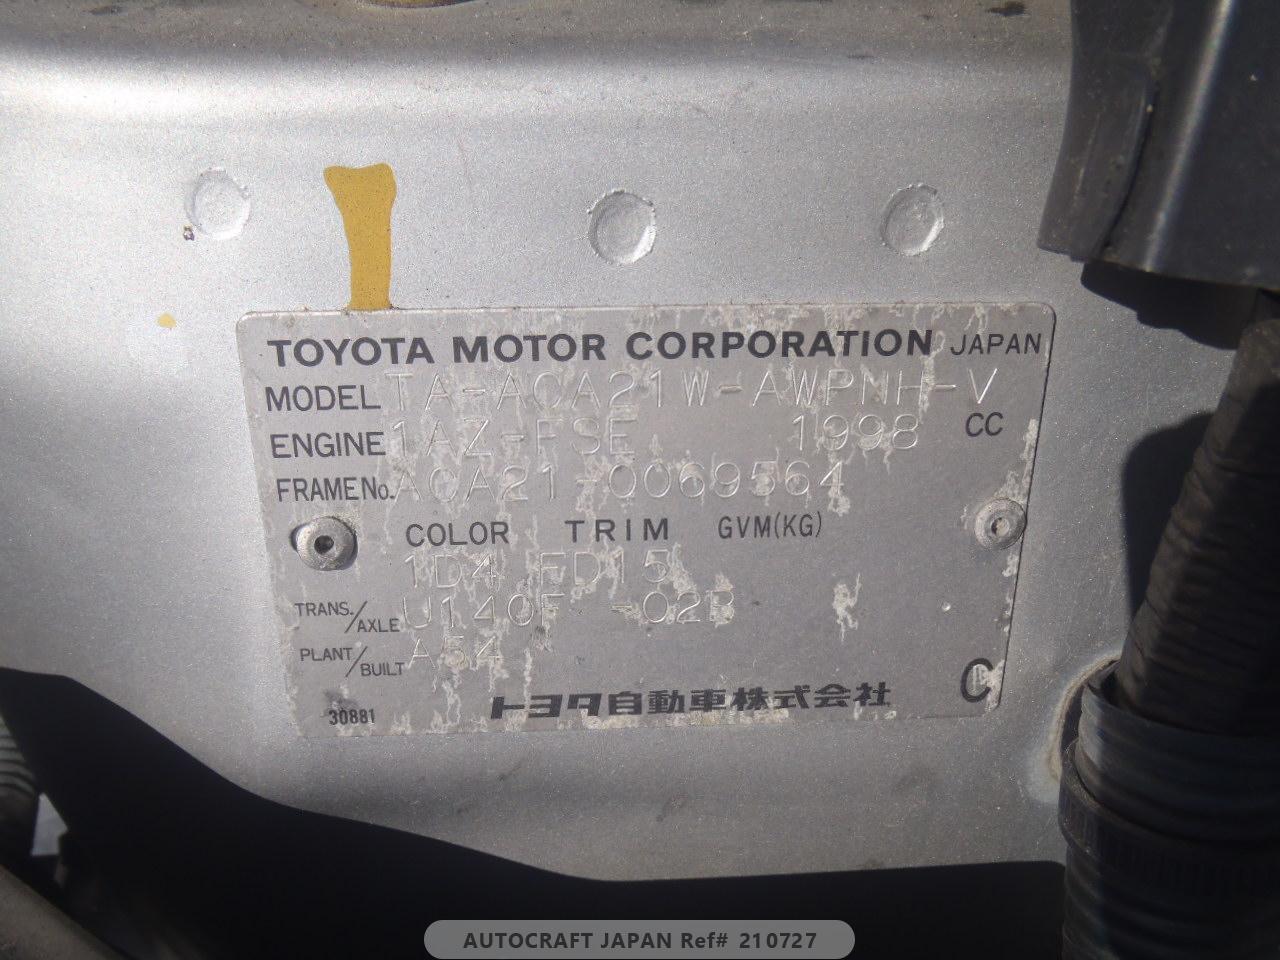 Toyota RAV4 2001